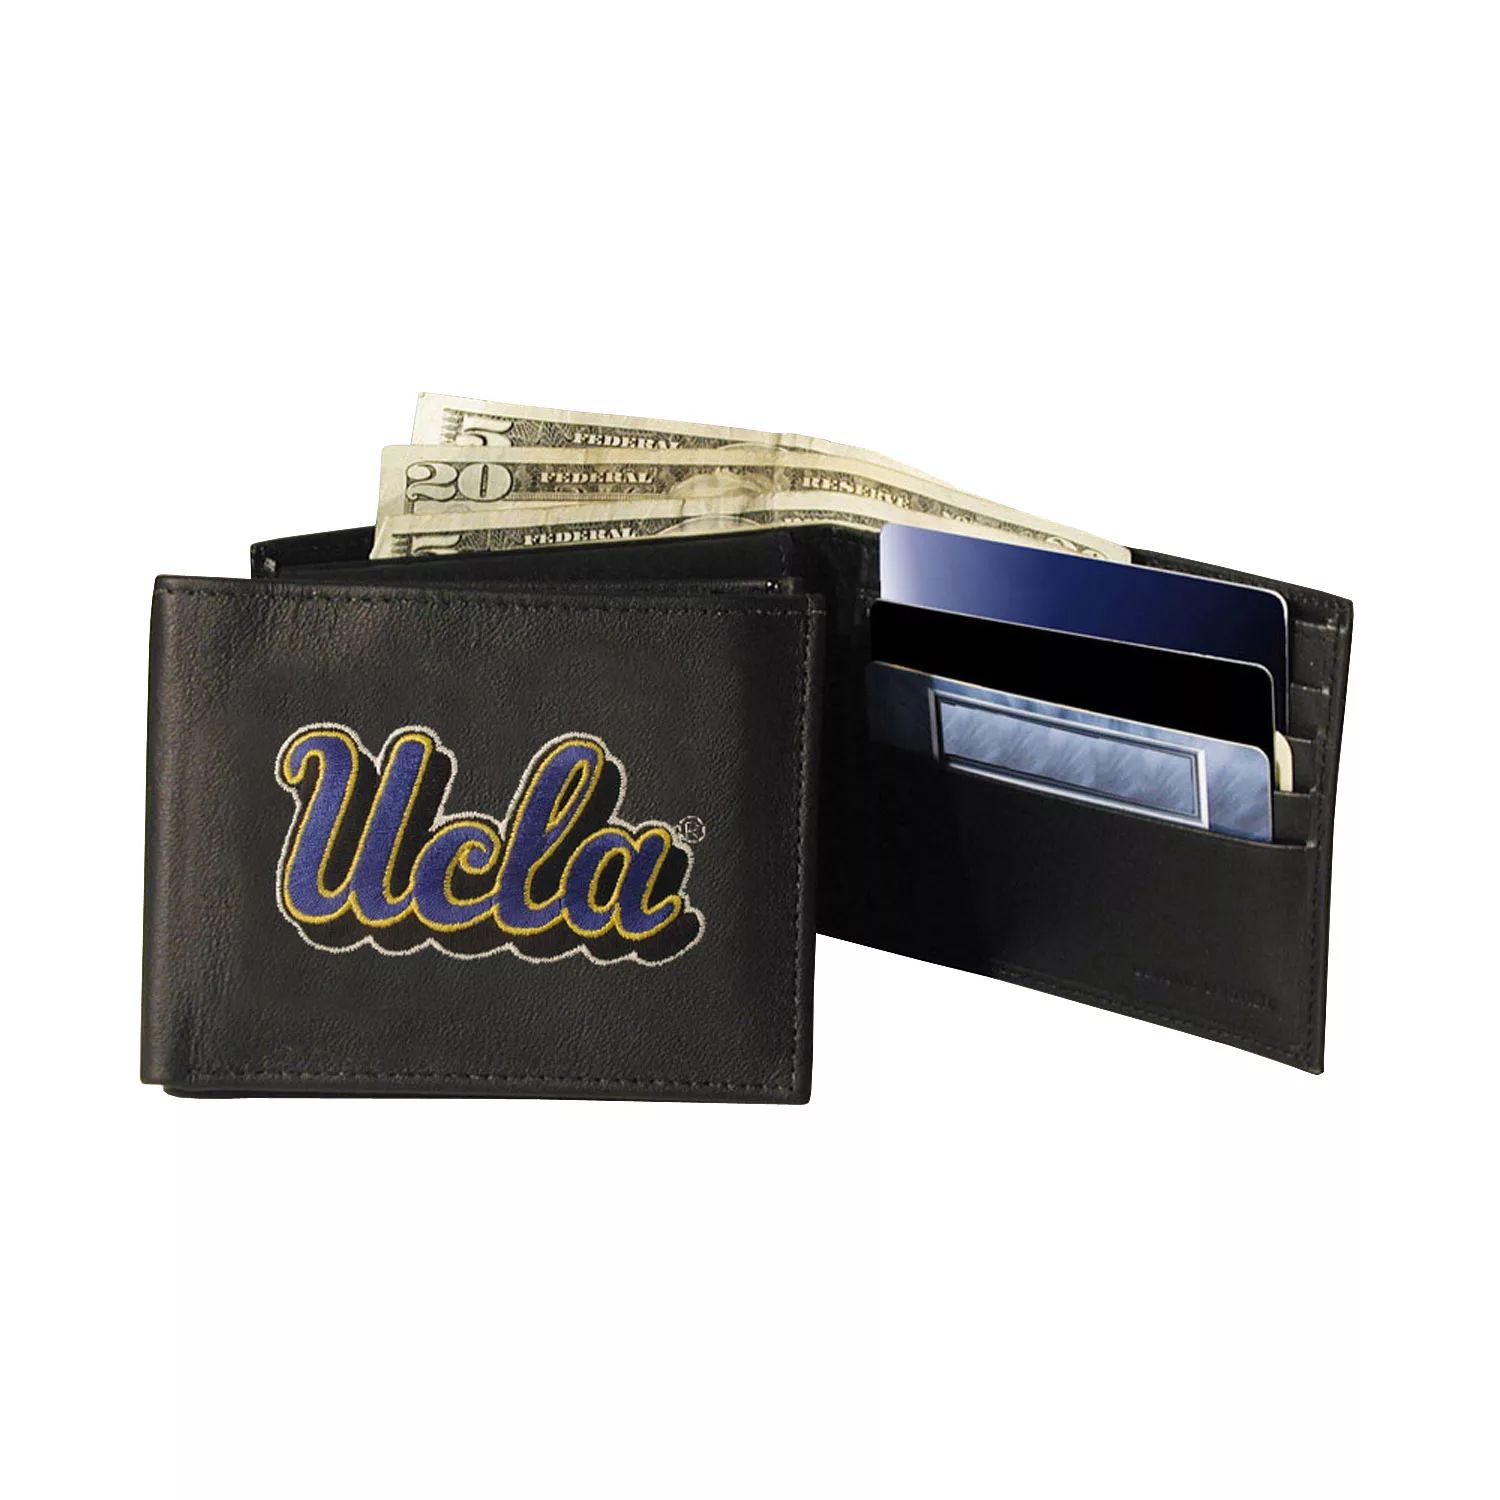 цена Кожаный кошелек UCLA Bruins двойного сложения